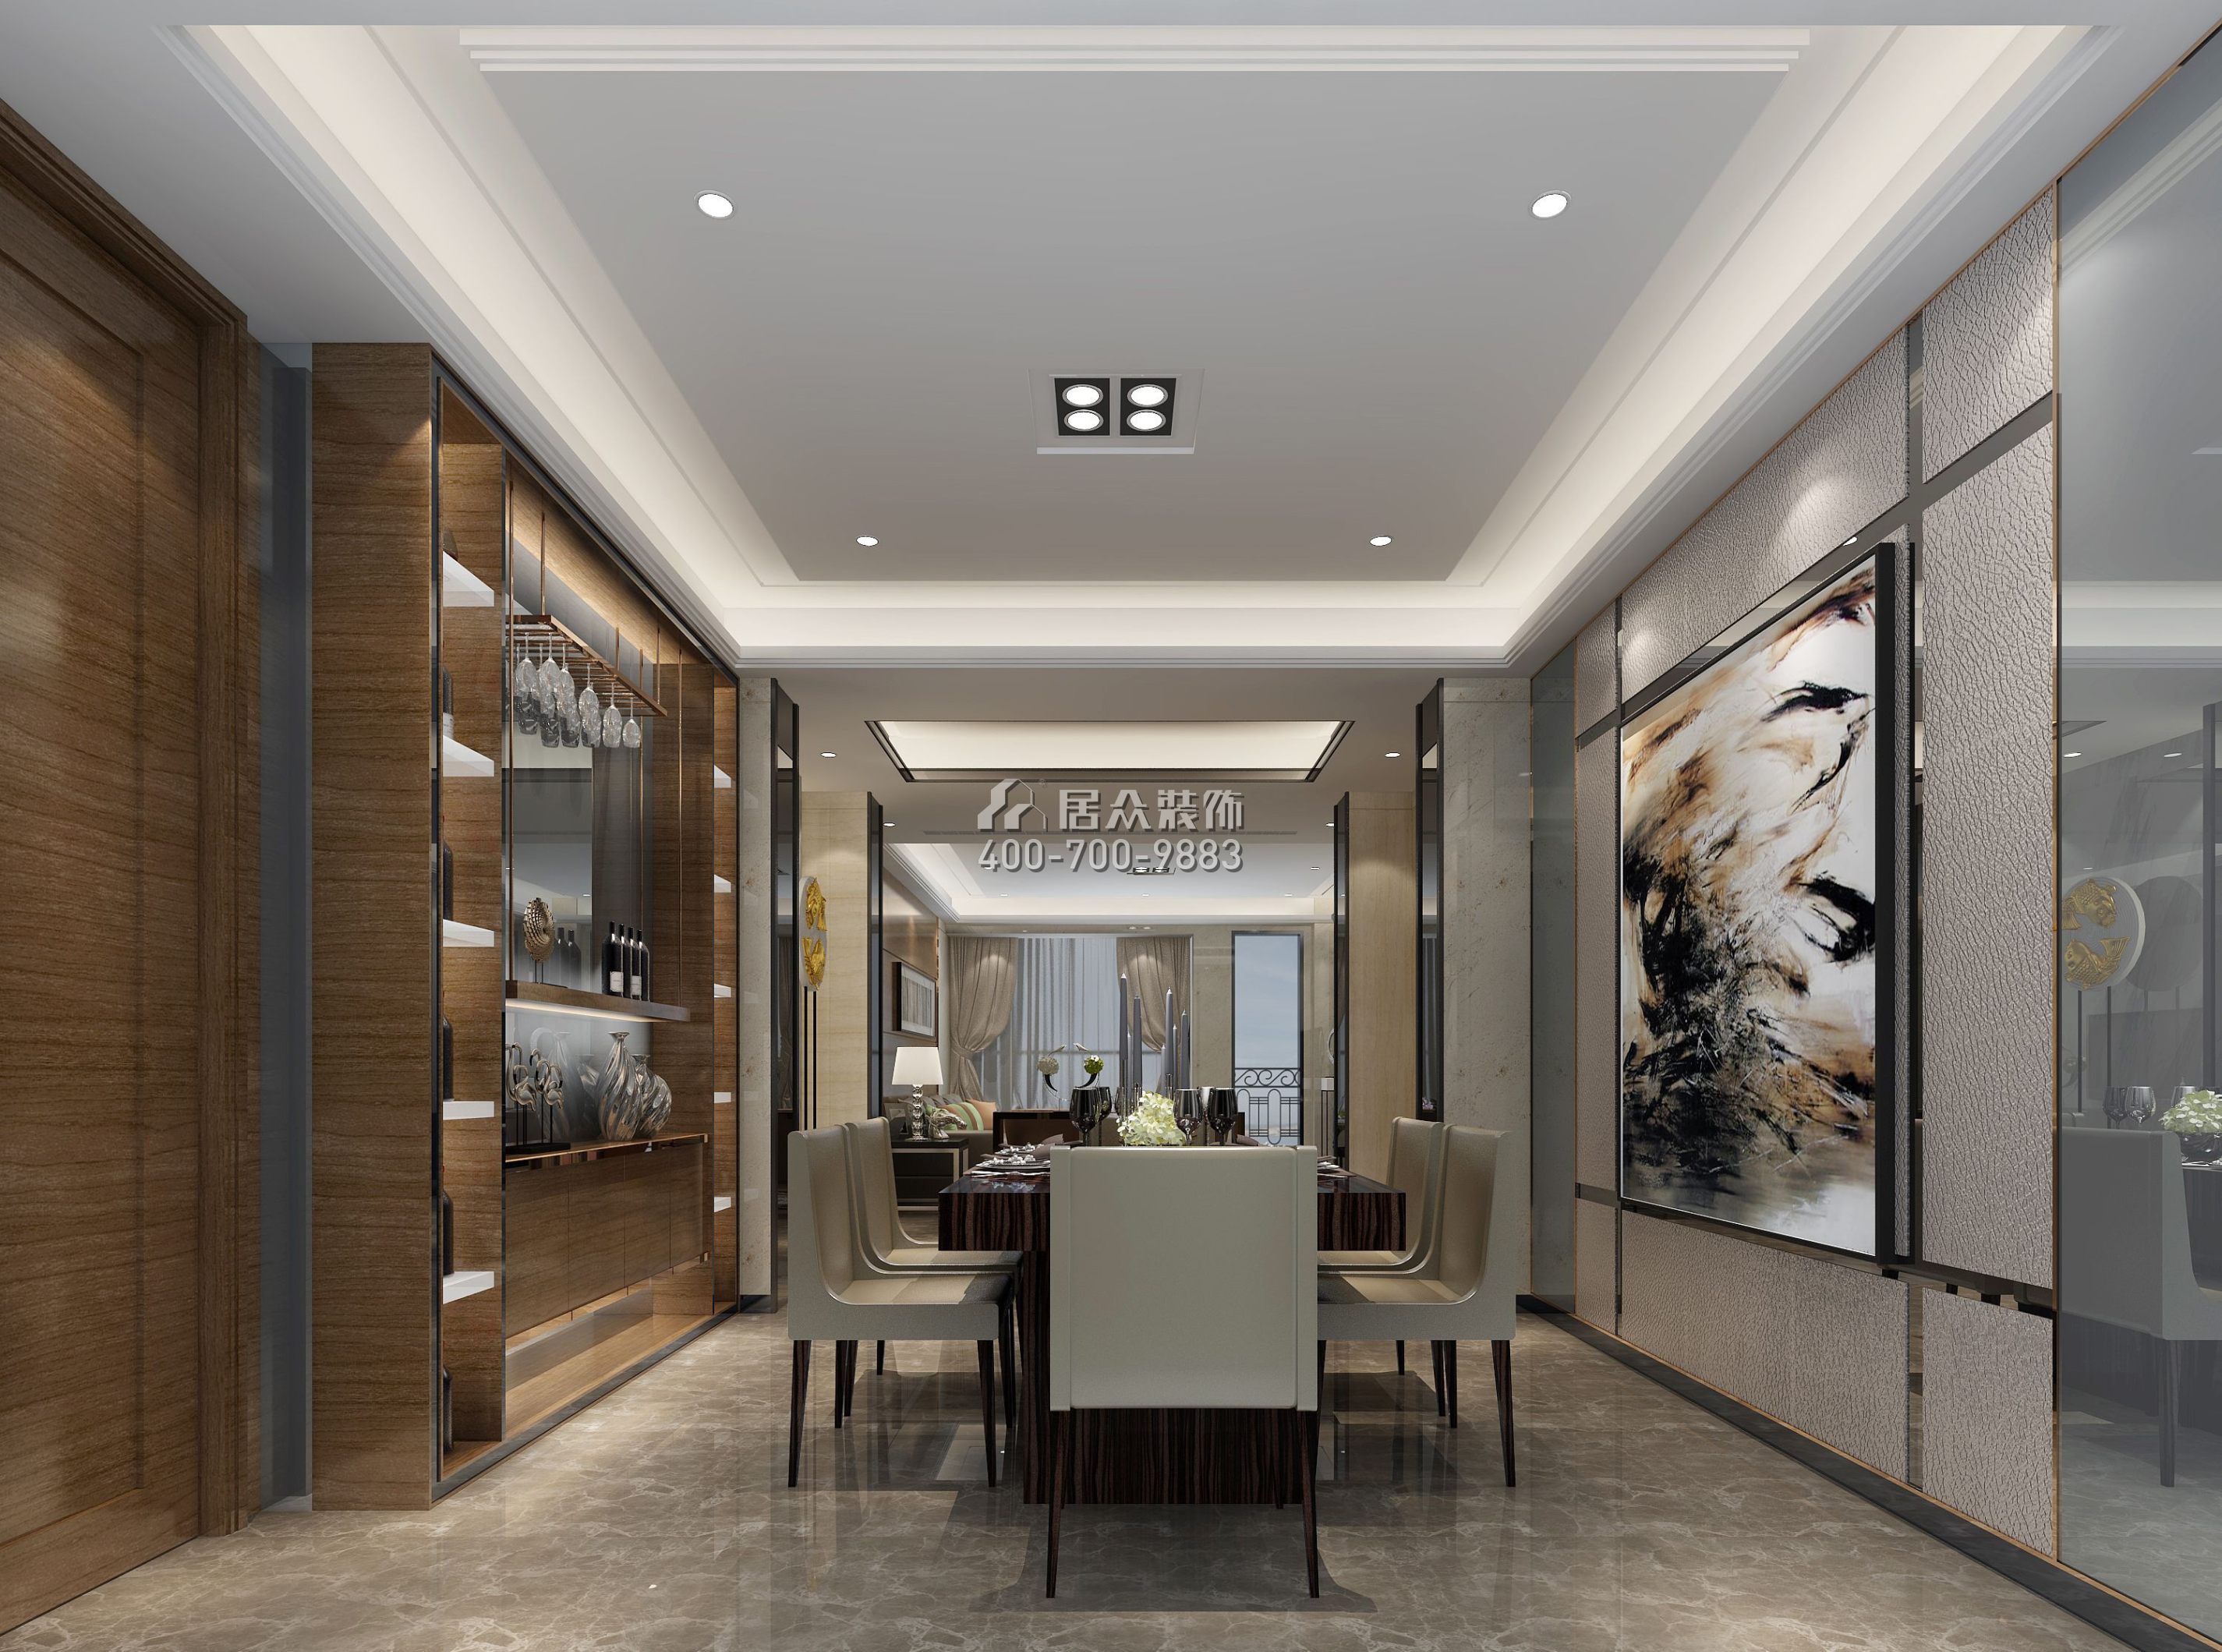 大康福盈门179平方米现代简约风格平层户型餐厅装修效果图